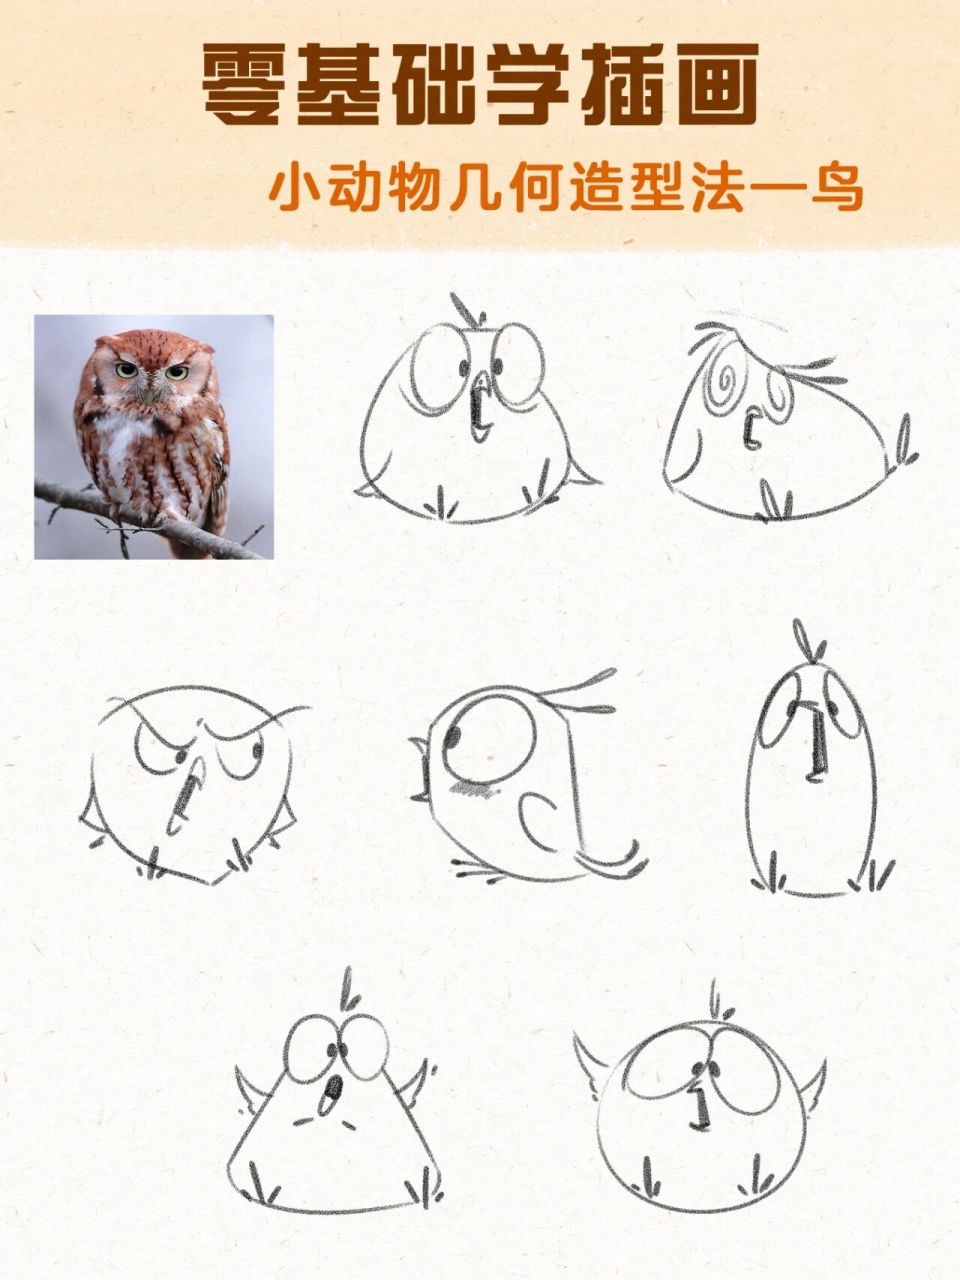 动物简笔画小鸟步骤图片